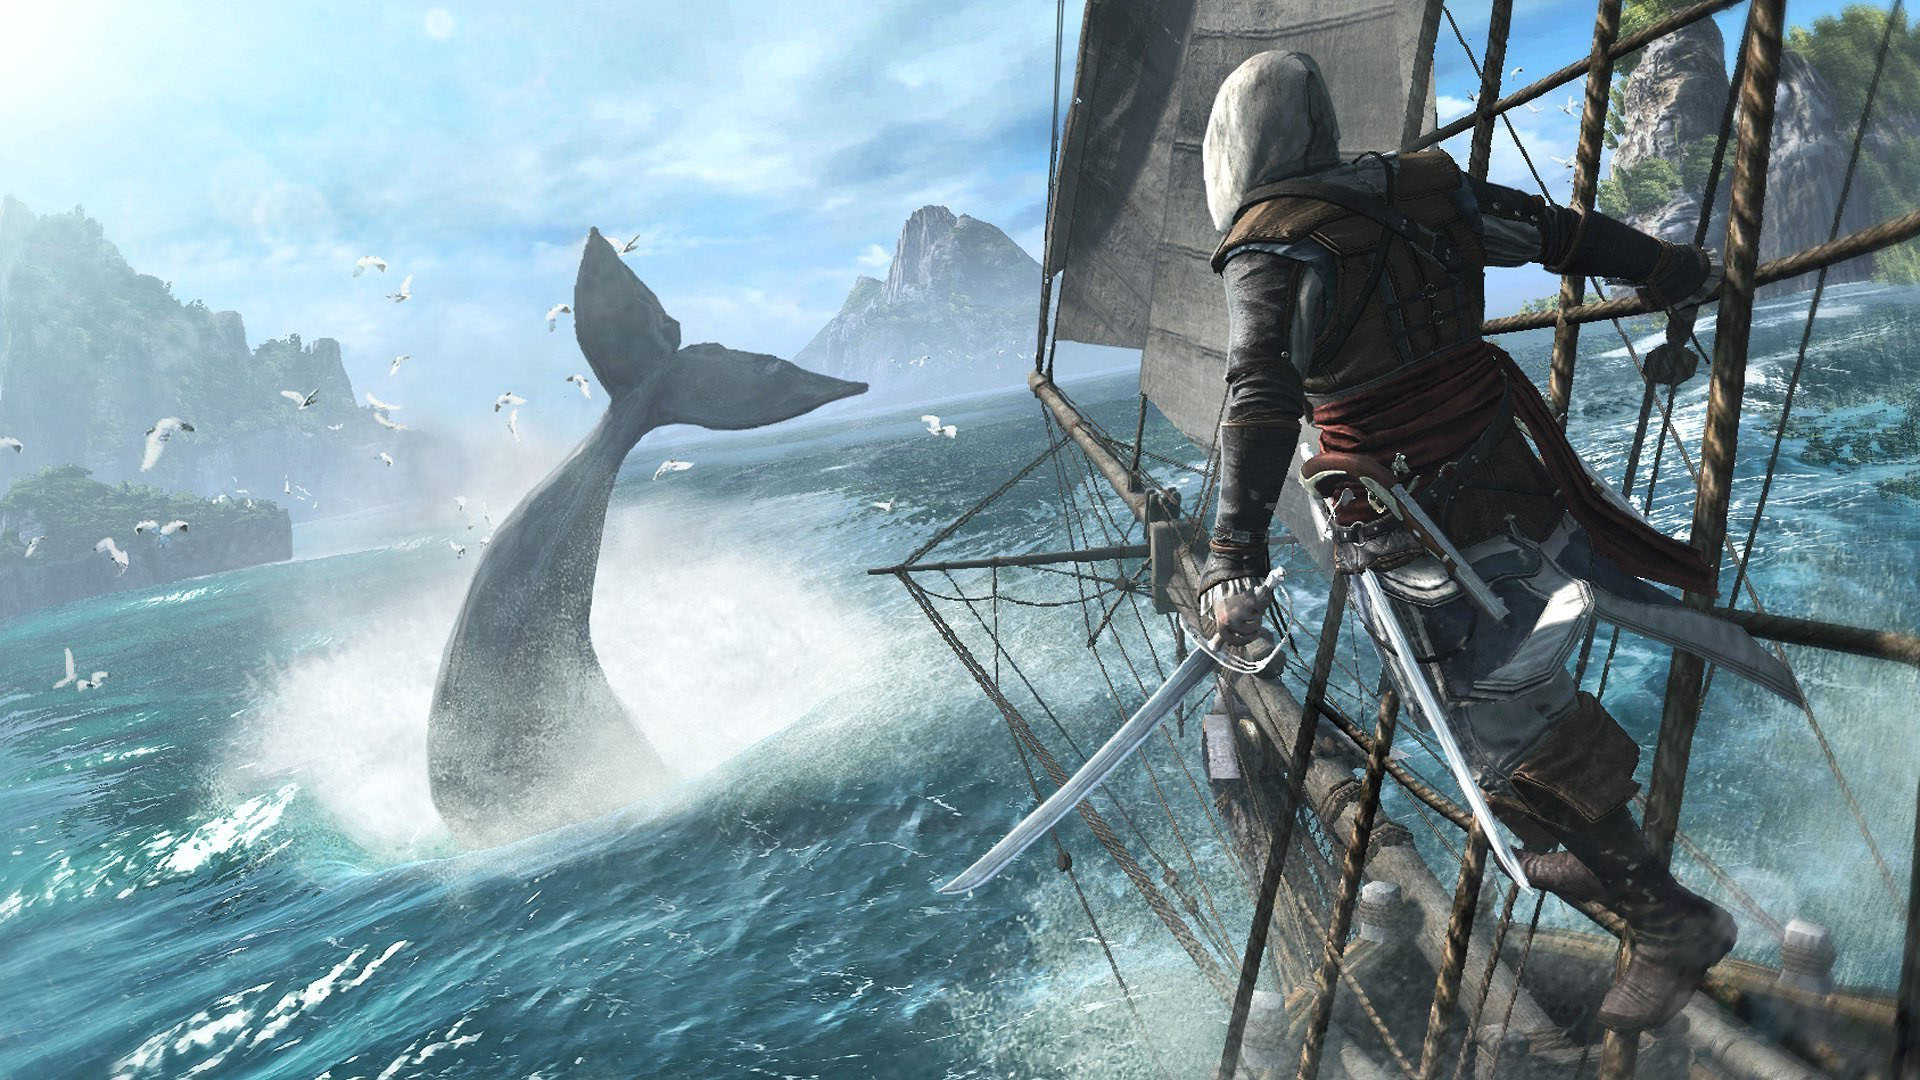 Assassin’s Creed Black Flag Wallpaper for Desktop | PixelsTalk.Net